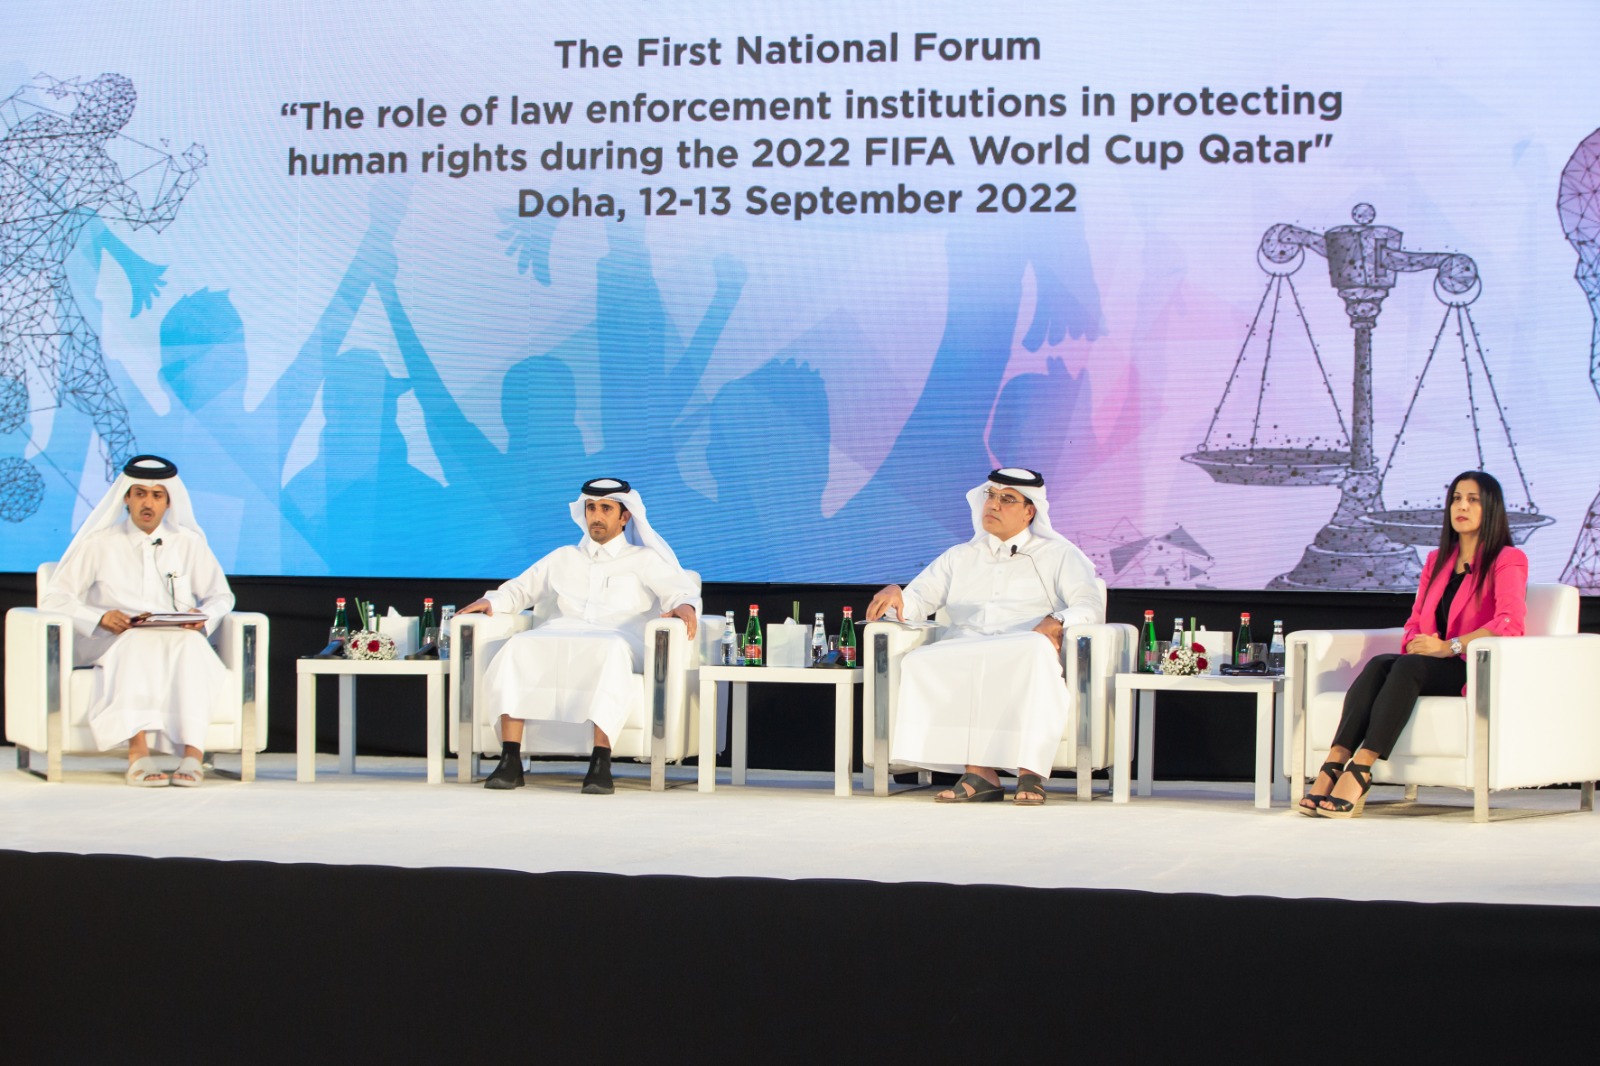 متحدثون في المنتدى الوطني الأول لحقوق الإنسان يؤكدون أن قوة قطر الناعمة أهلتها لاستضافة مونديال 2022